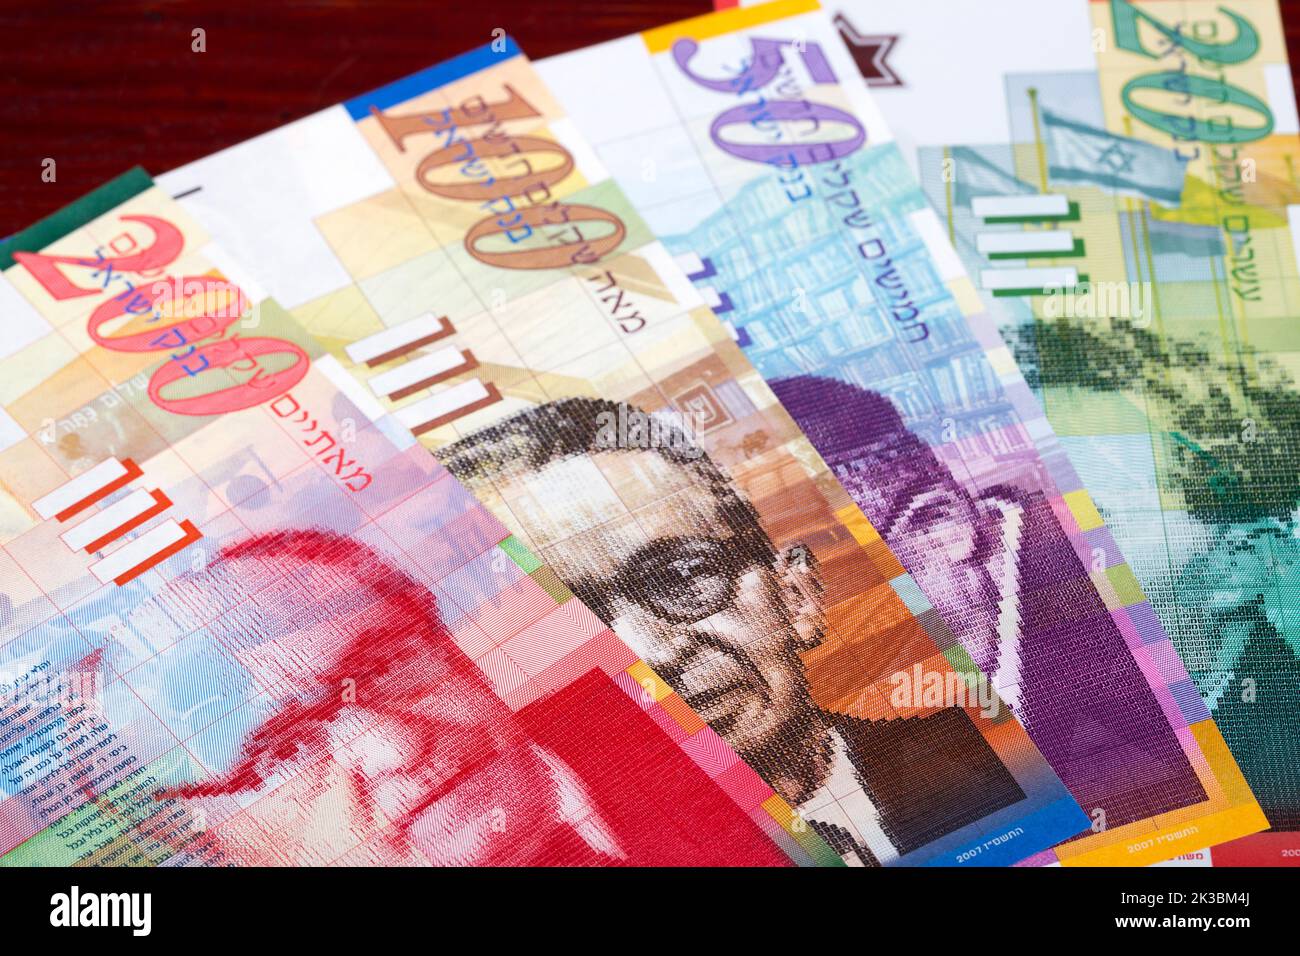 Israeli money - Shekel a business background Stock Photo